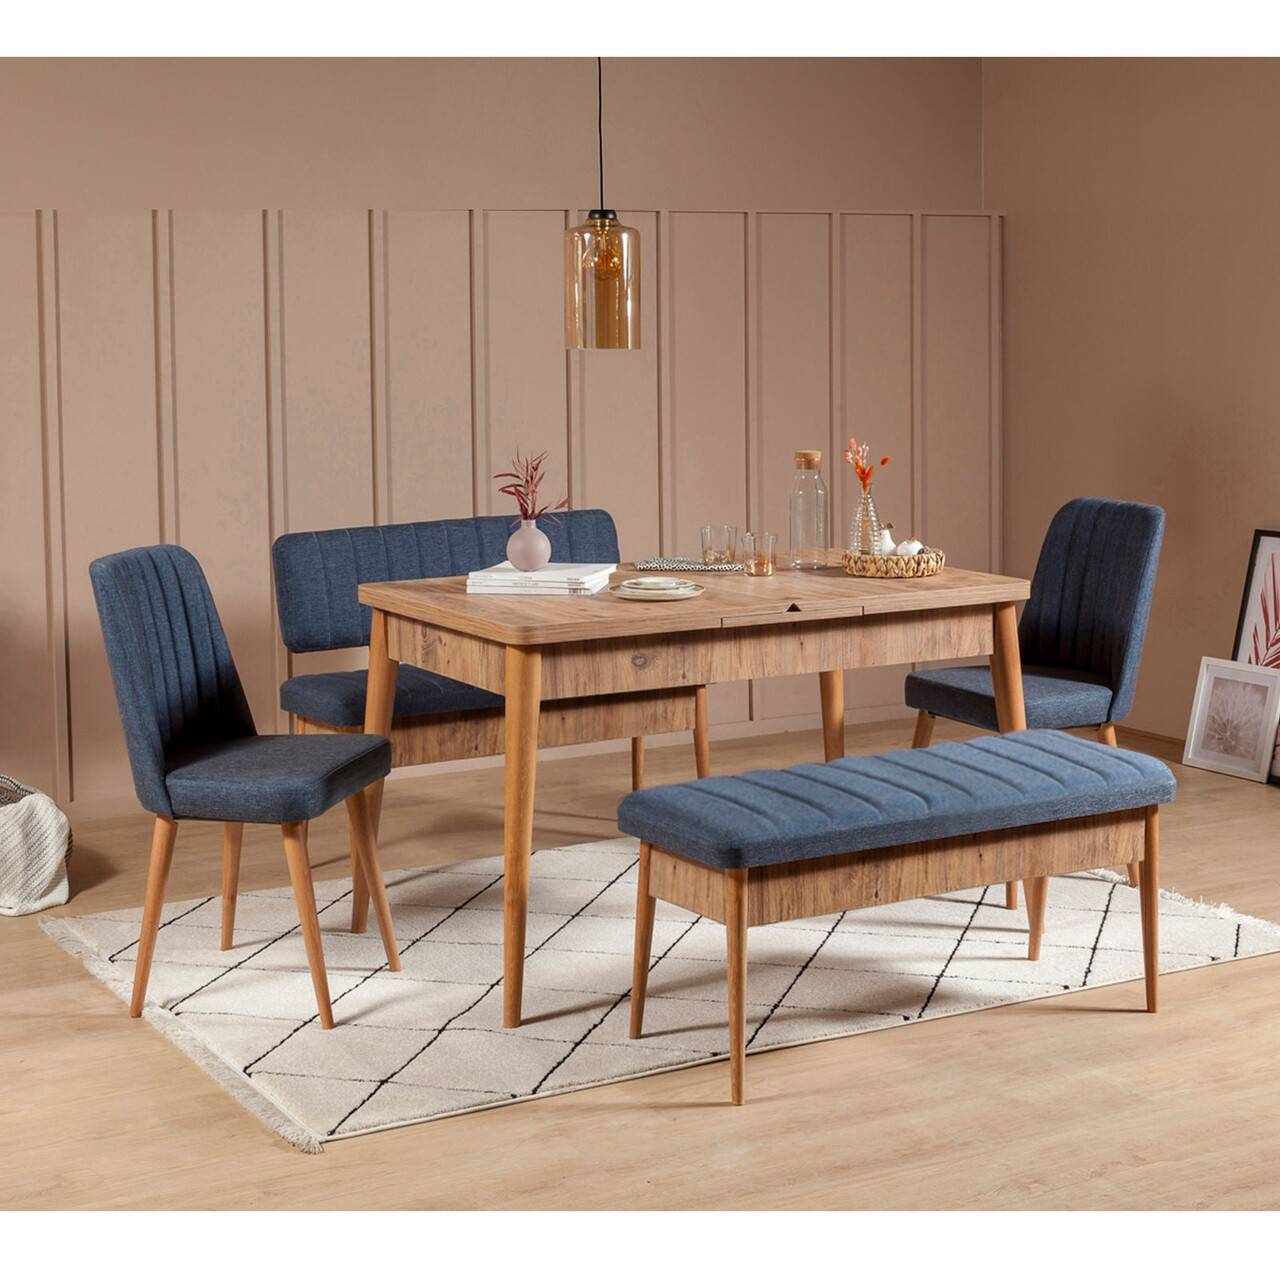 Conjunto de mesa extensible, 2 sillas, banco y banqueta Malva Madera clara y tela azul oscuro